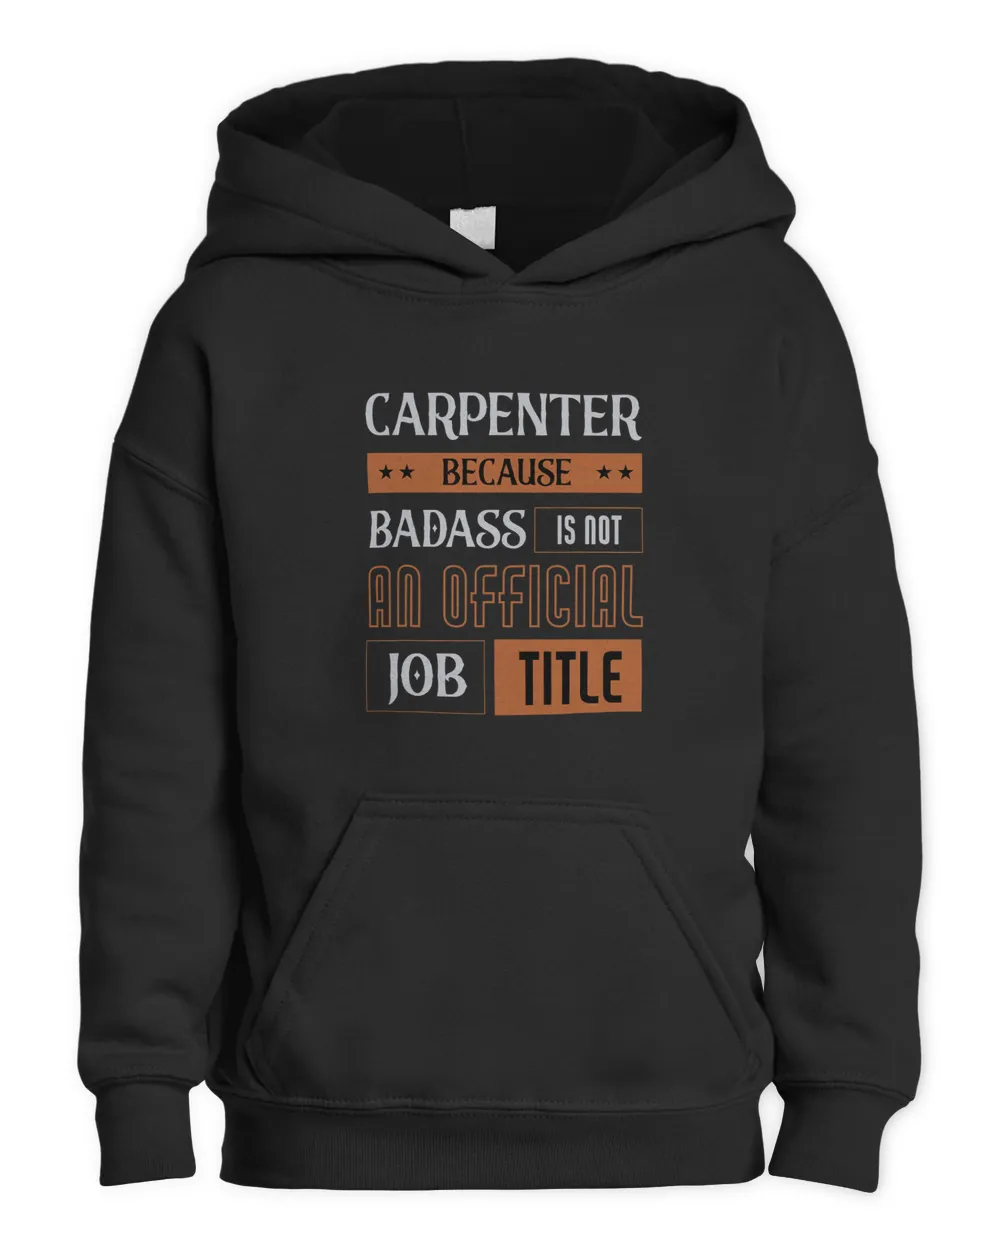 Badass Is Not Official Job Title Wood Carpenter